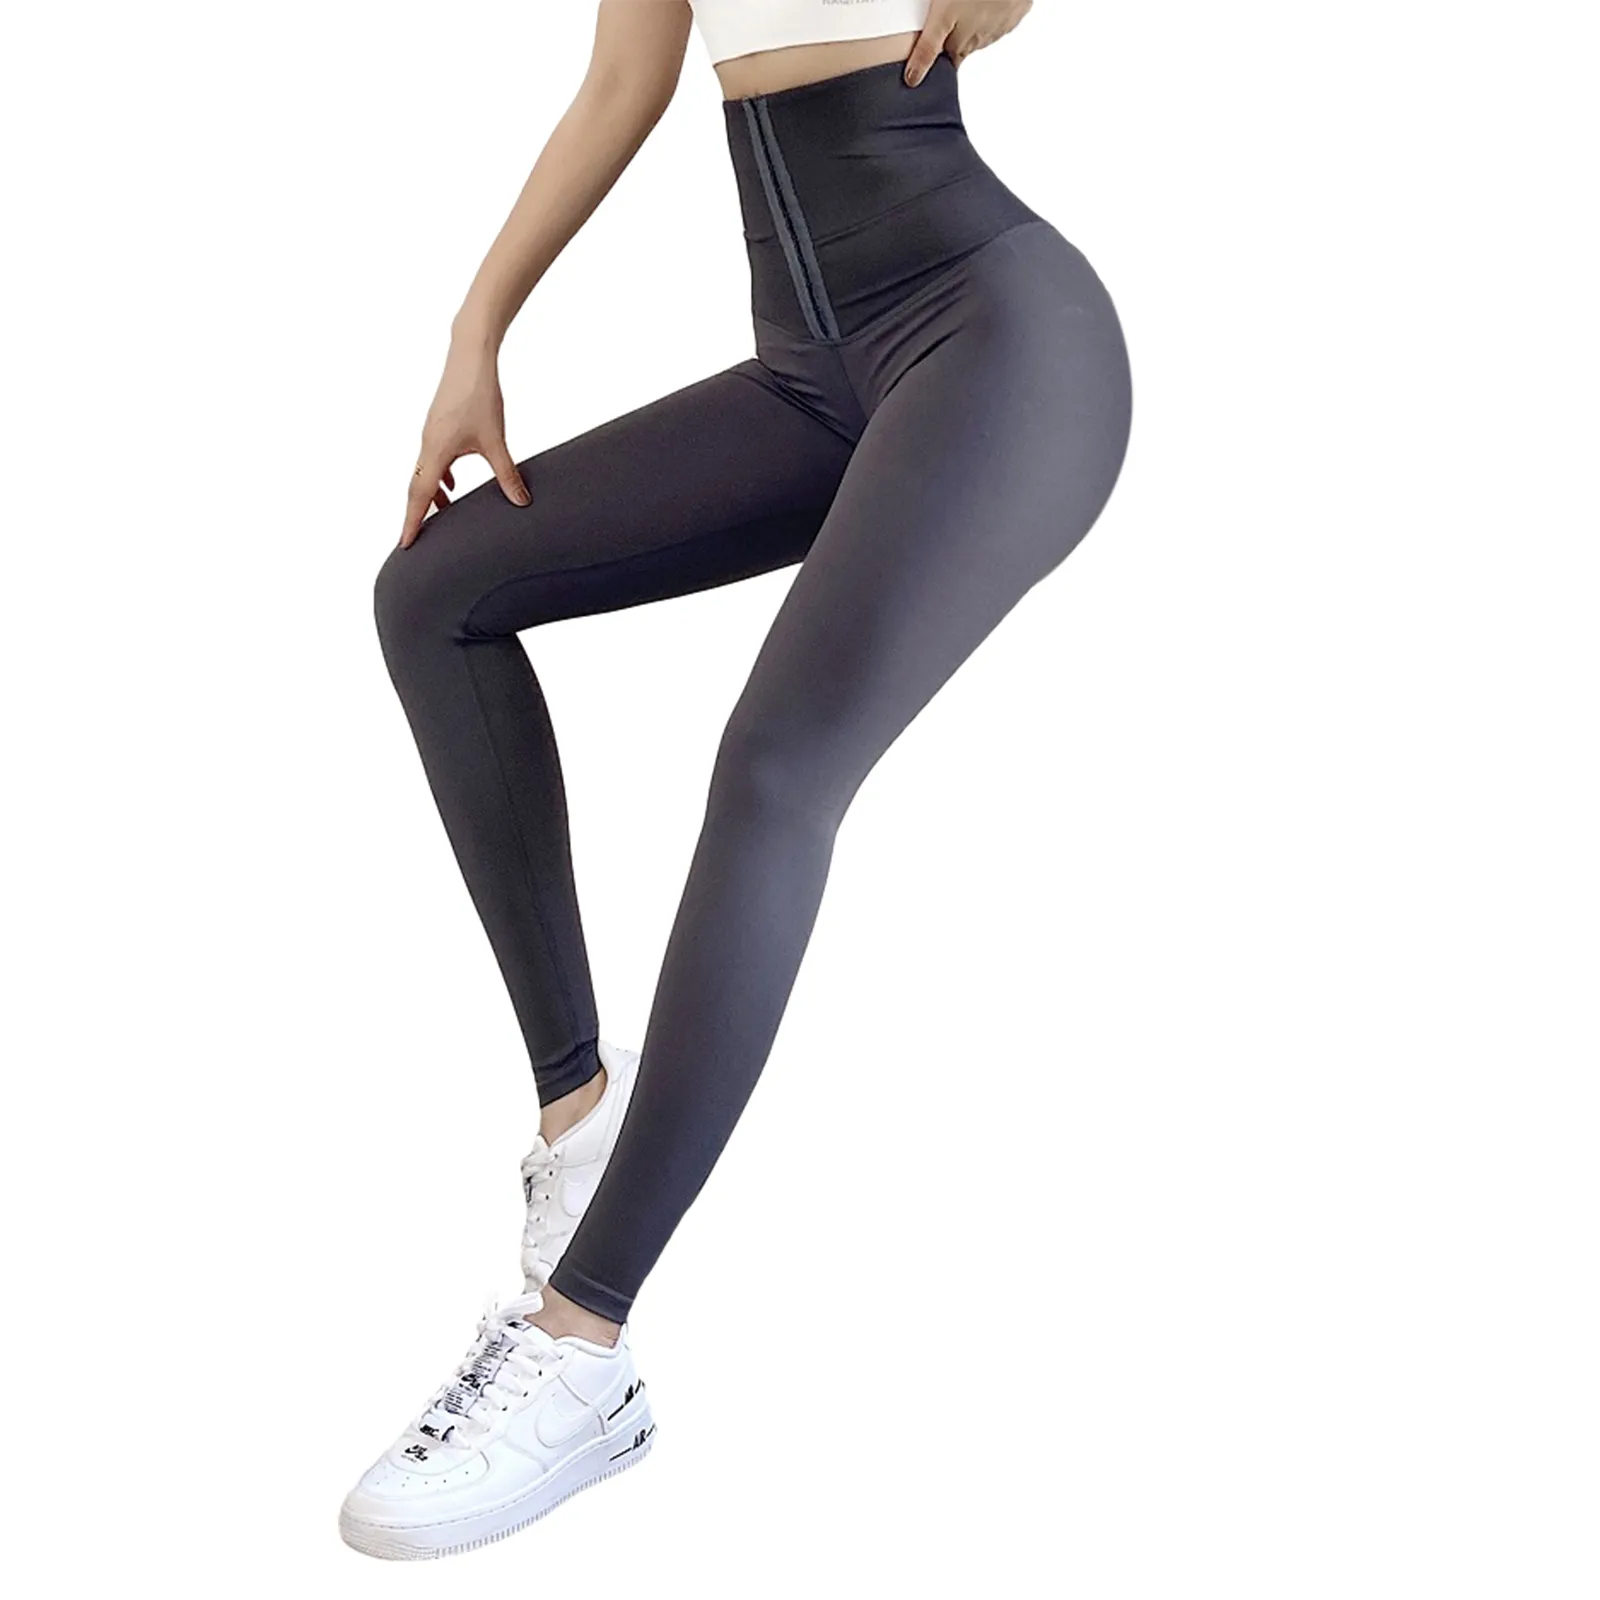 Bayan Popo Kaldırma Dikişsiz Tozluk Rahat Yüksek Bel Karın Kontrol Streç Egzersiz Yoga Pantolon X1227